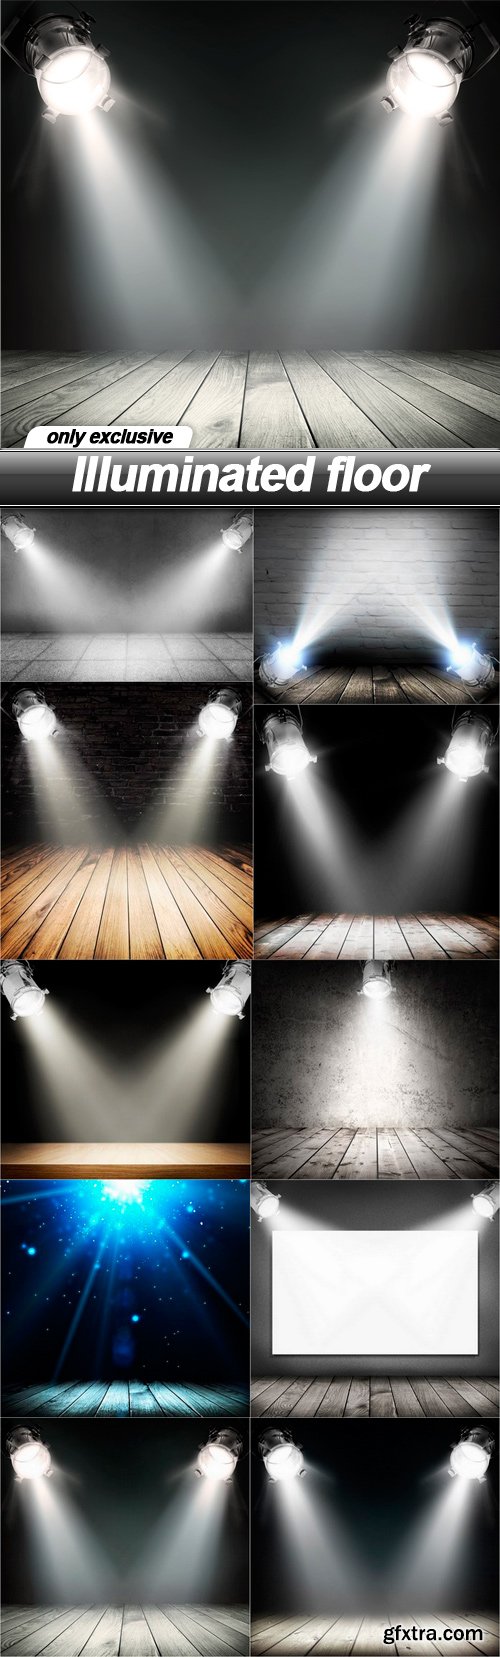 Illuminated floor - 10 UHQ JPEG